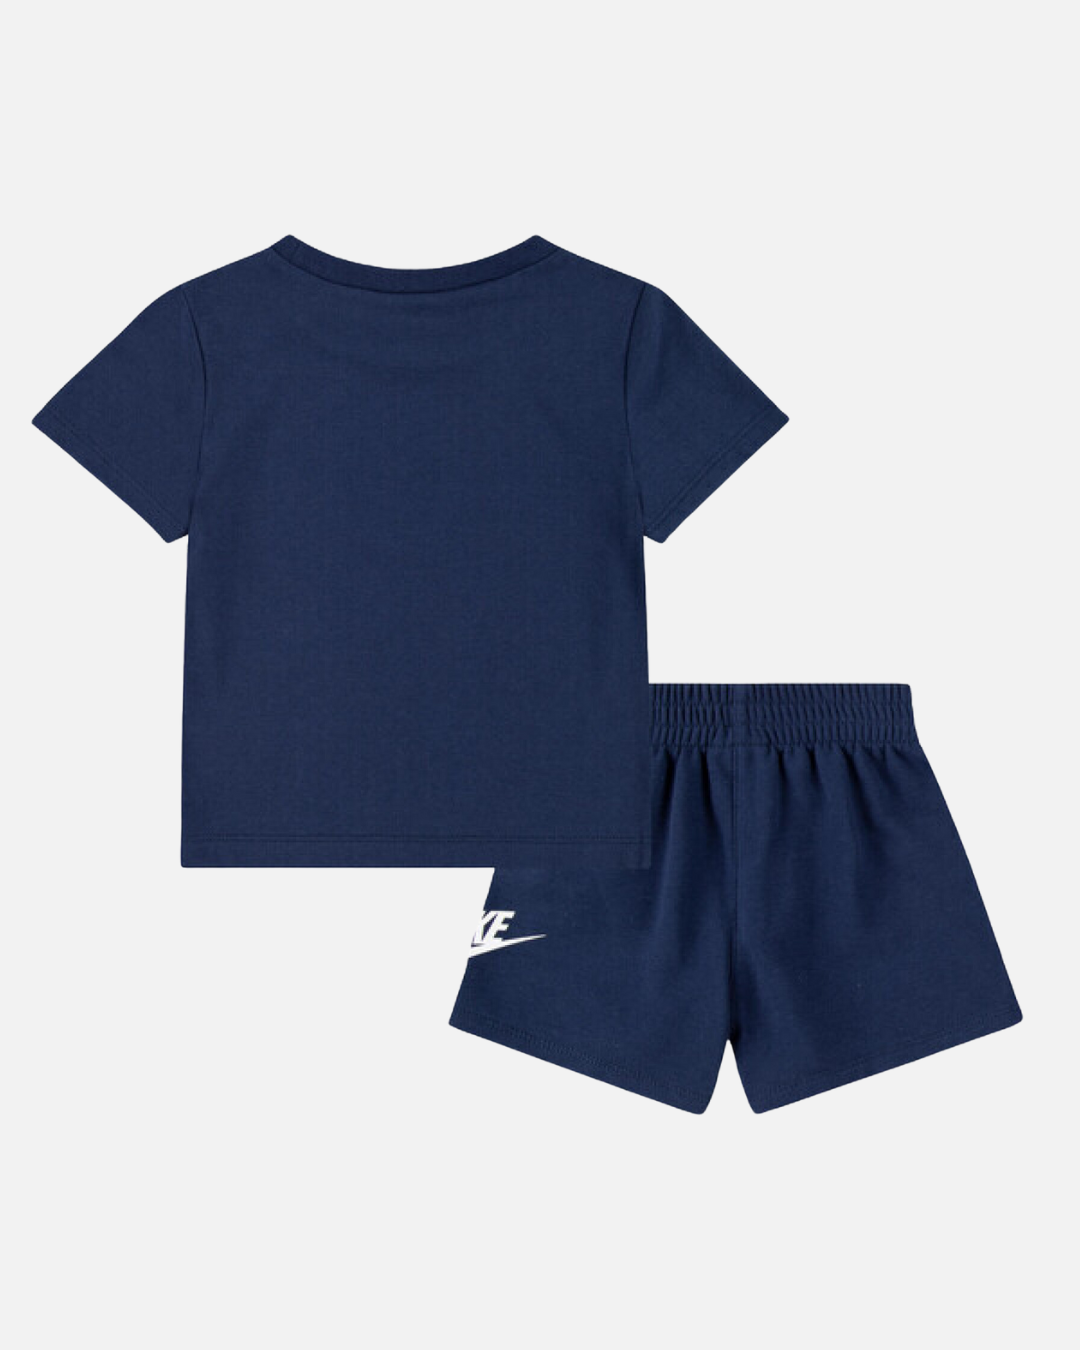 Completo maglietta/pantaloncini Nike da bambino - Blu